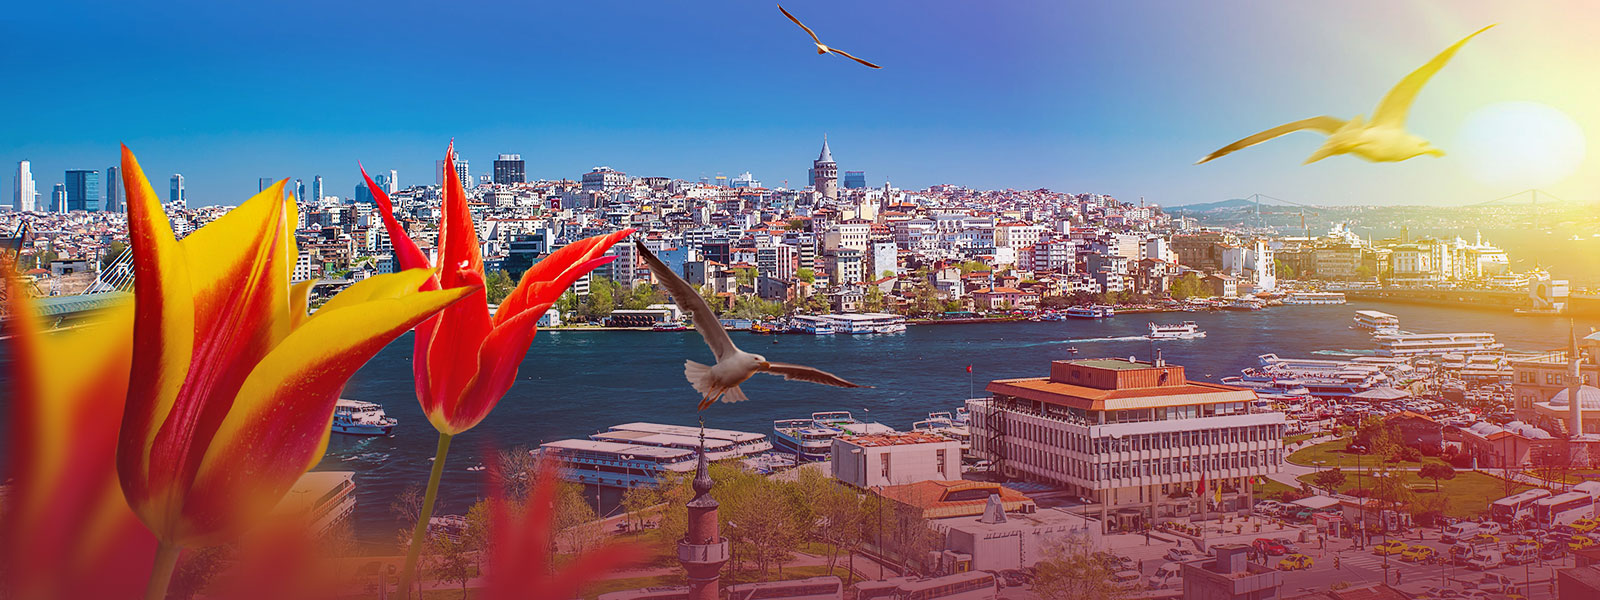 Журнал/15 неожиданных фактов о Стамбуле, после которых город откроется с другой стороны